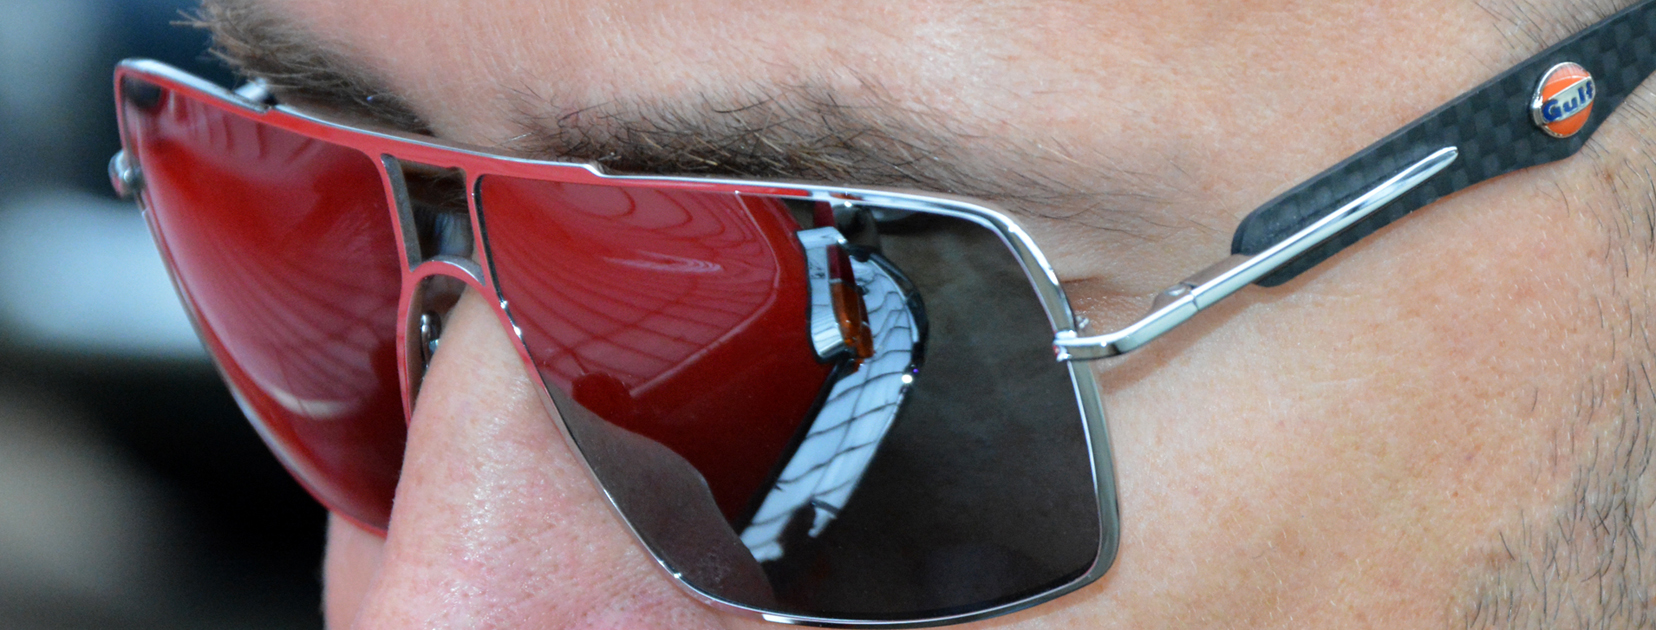 Anpassung der Sonnenbrille, falls Ihre Gulf-Eyewear Brille drücken sollte